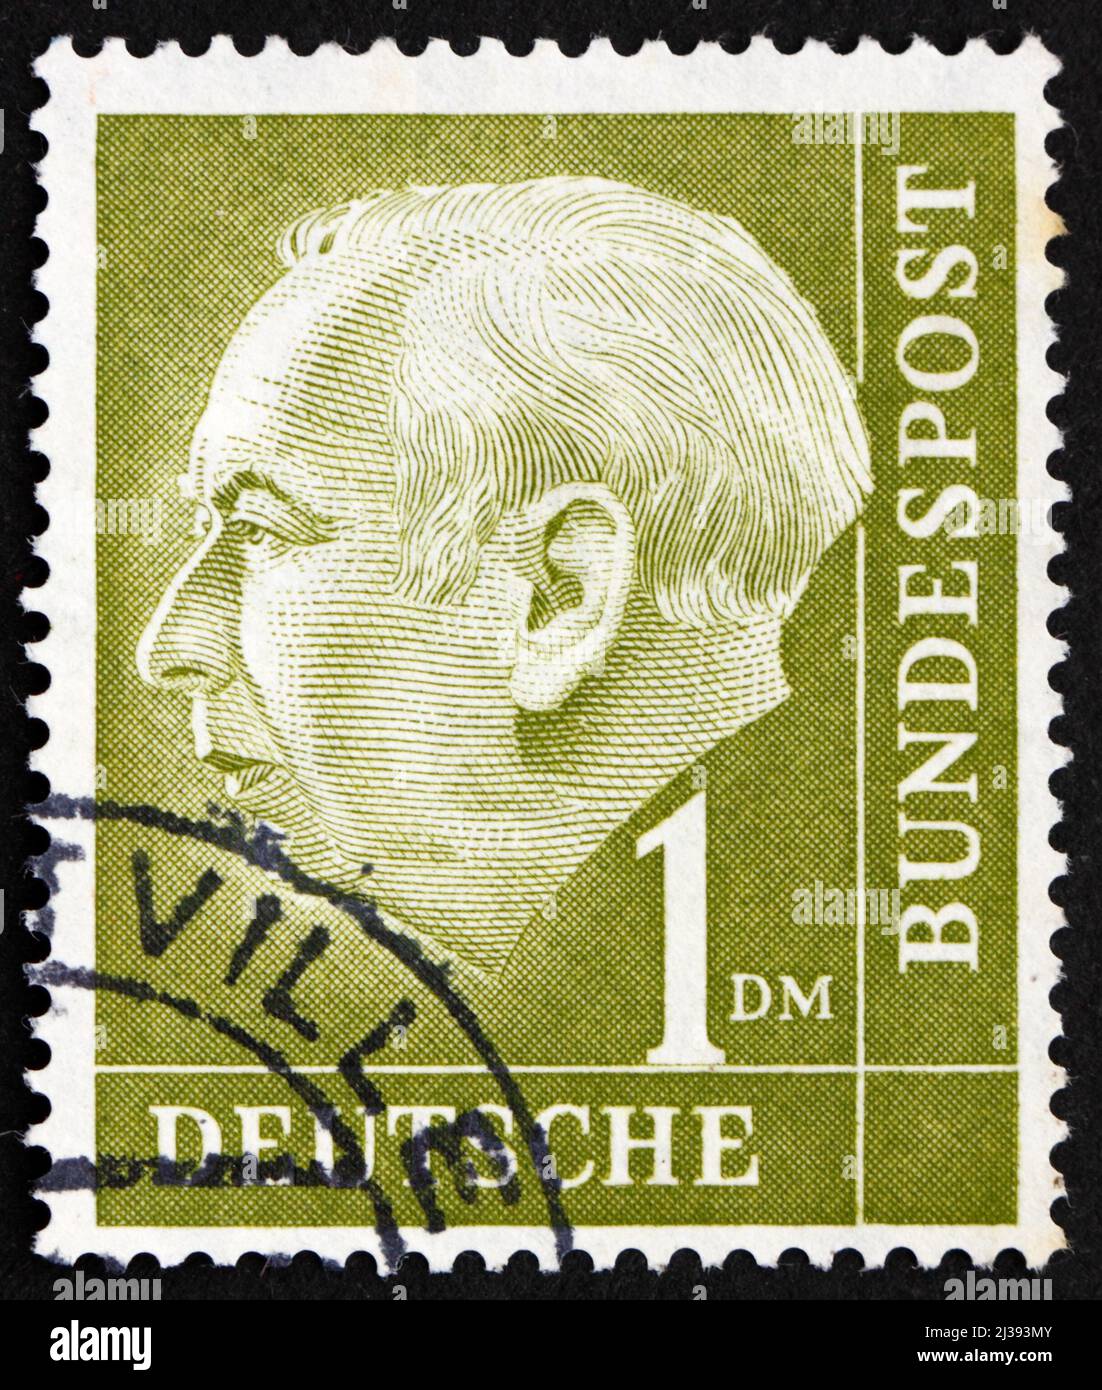 DEUTSCHLAND - UM 1954: Eine in Deutschland gedruckte Briefmarke zeigt Theodor Heuss, 1. Präsident der Bundesrepublik Deutschland, 1949-1959, um 1954 Stockfoto